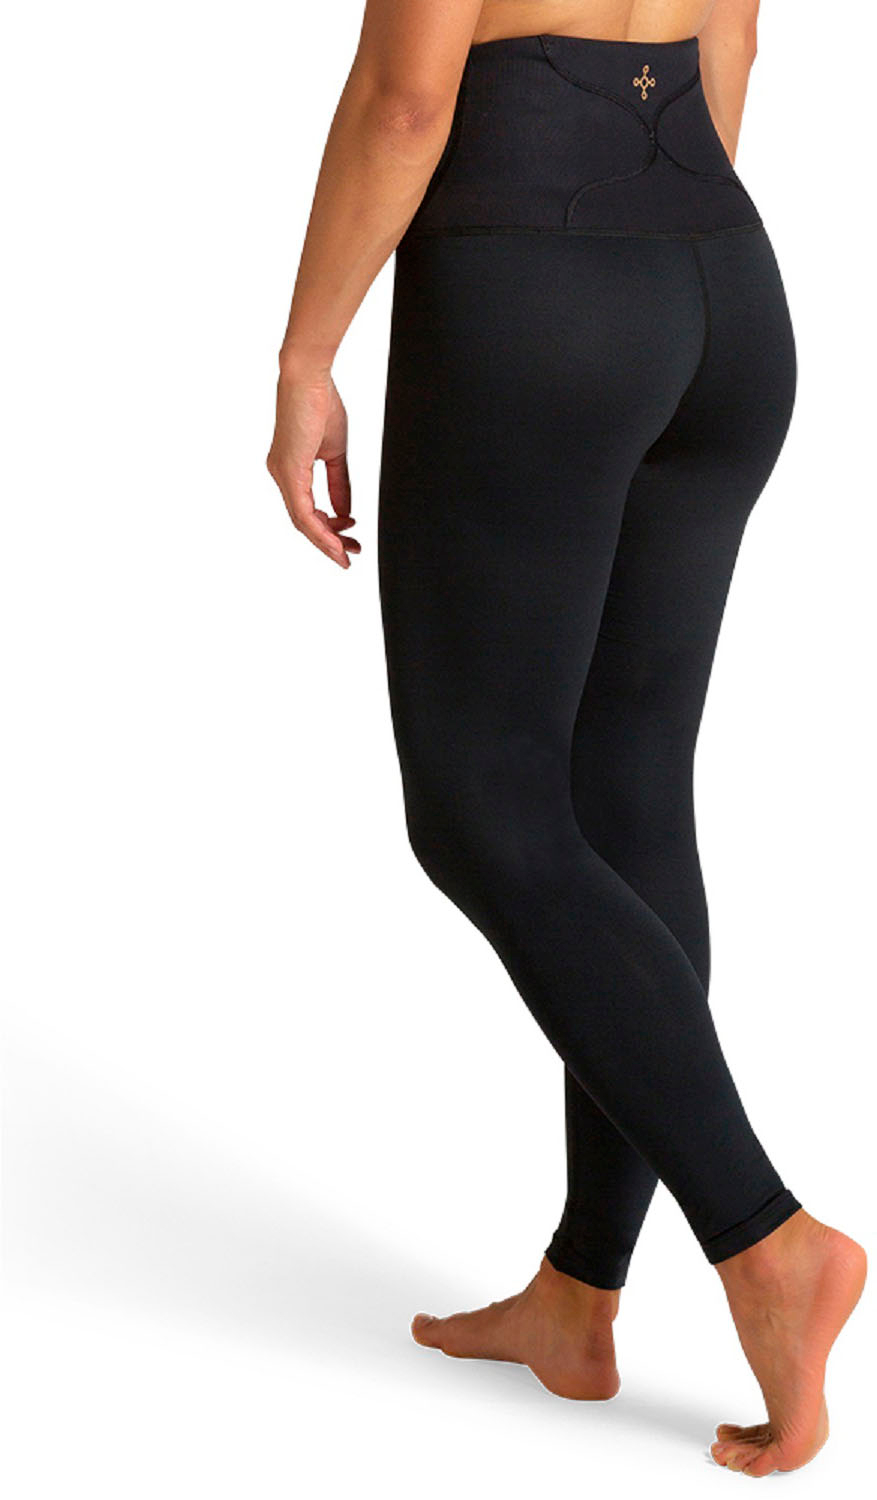 Best Buy: Tommie Copper Women's Lower Back Support Leggings Black  1522WR-0101-M